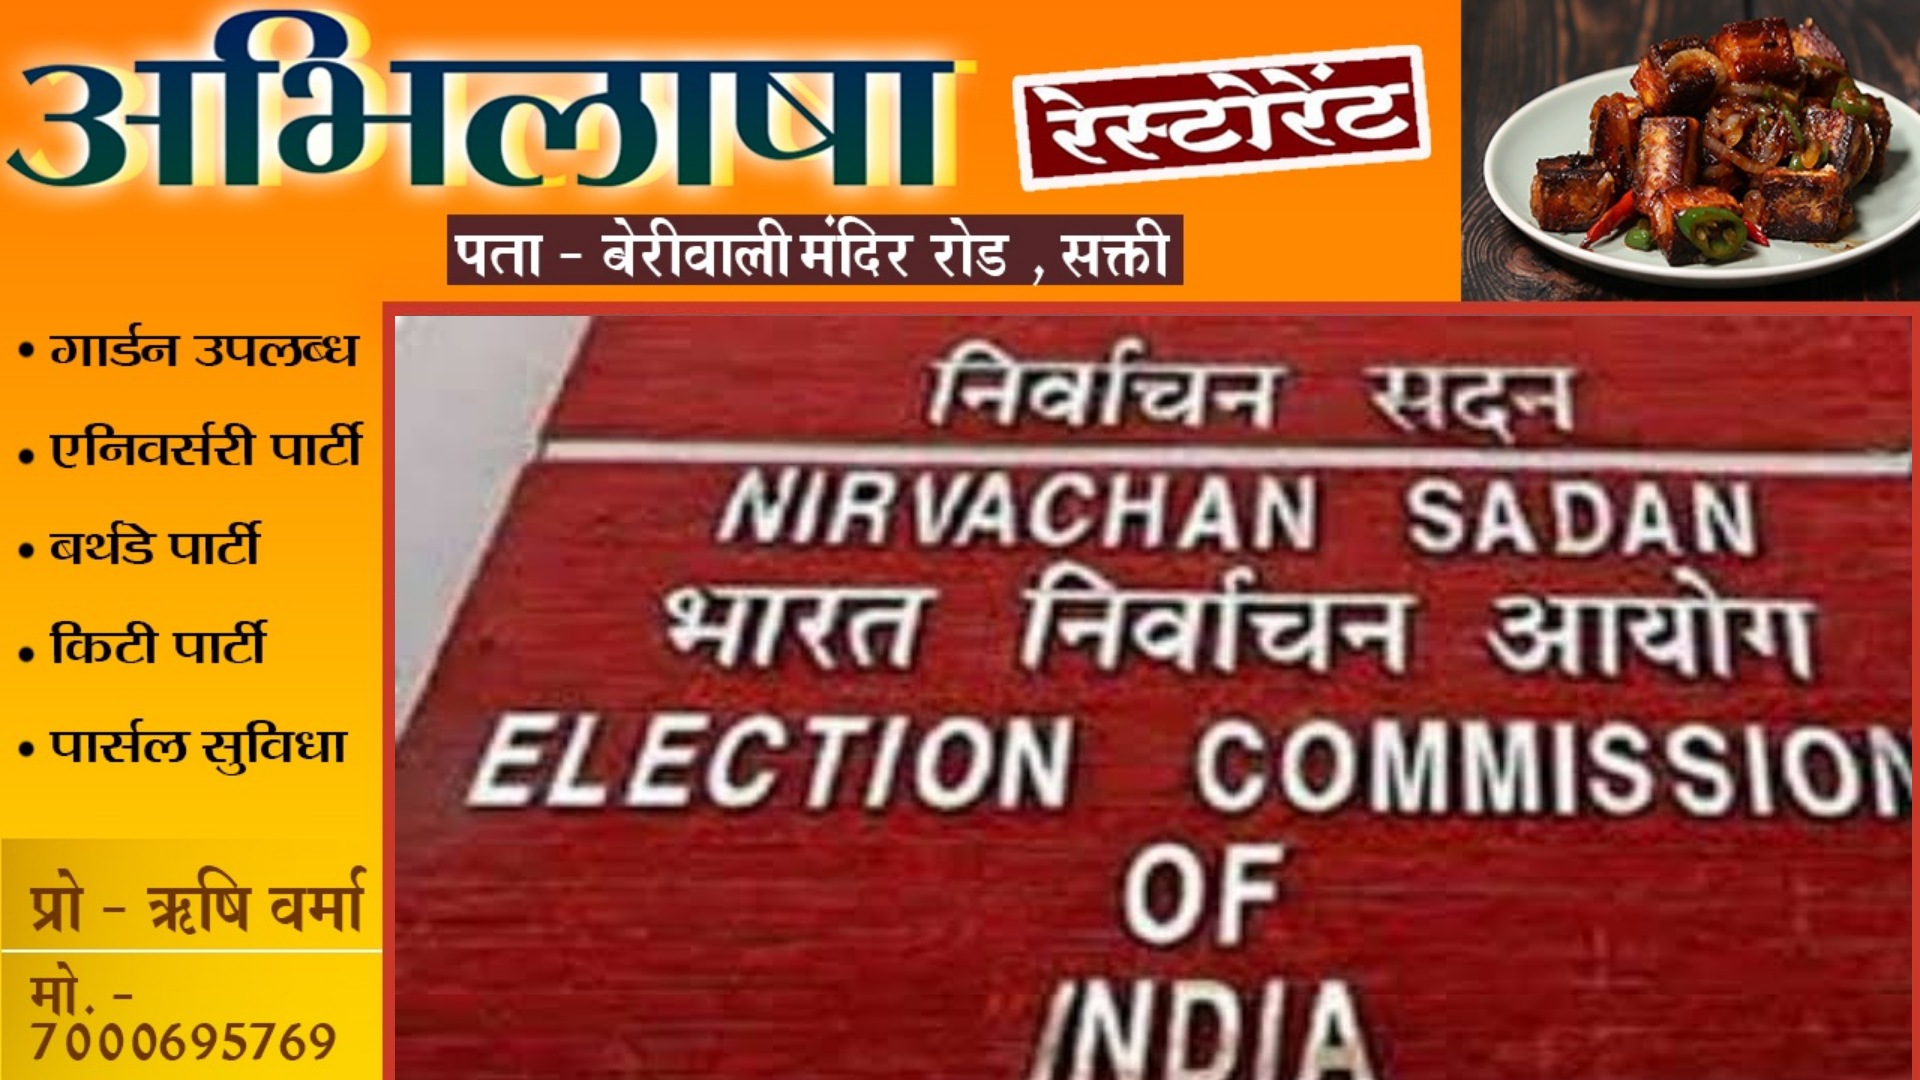 बड़ी खबर - निर्वाचन आयोग ने बदली चुनाव की तारीख , अब 26 अप्रैल को नही डलेगा वोट